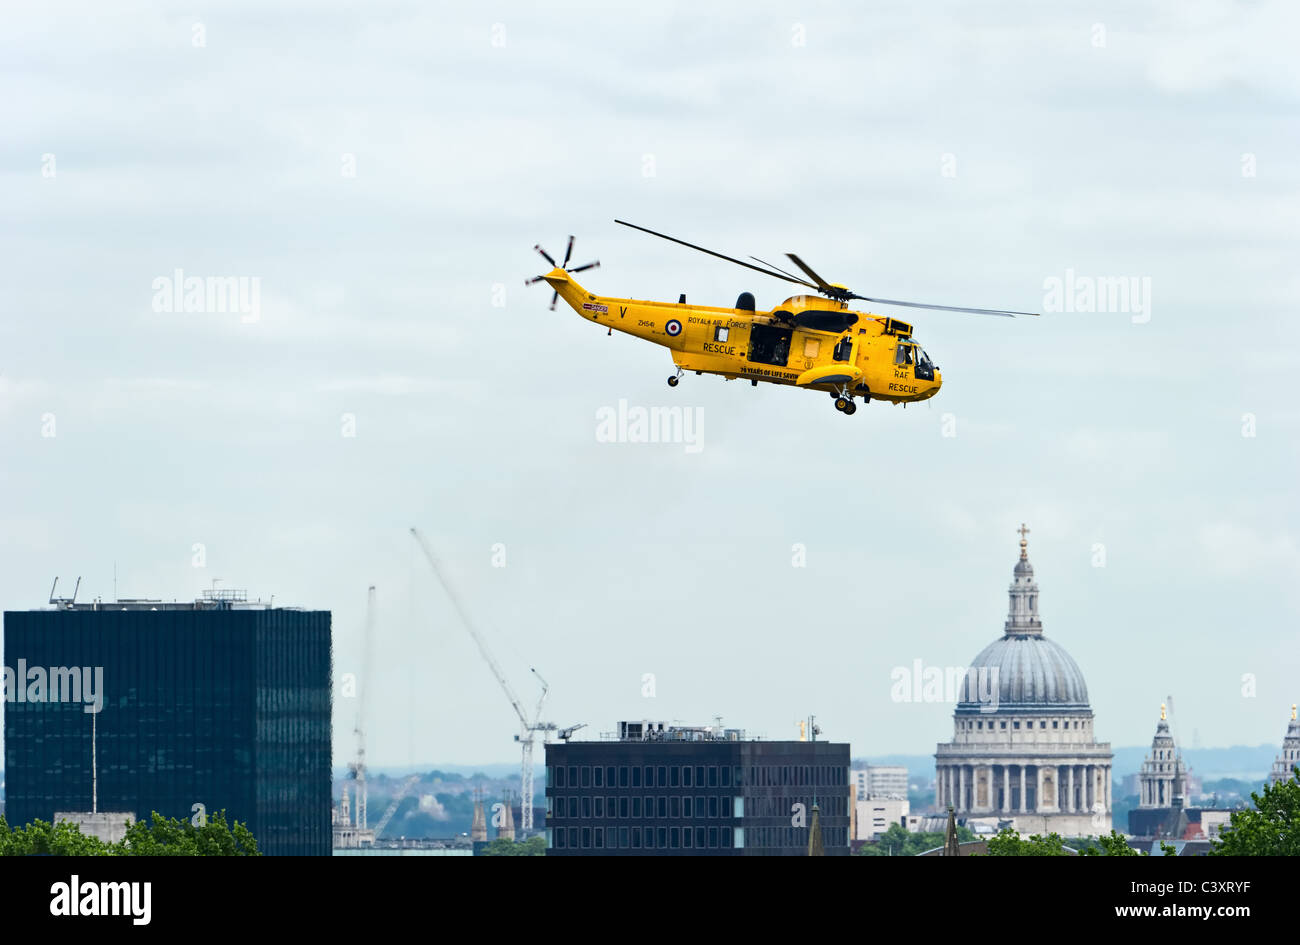 Westland Sea King har3un helicóptero de búsqueda y rescate del vuelo, el Escuadrón nº 22 de la RAF, despegando en Londres, Inglaterra Foto de stock